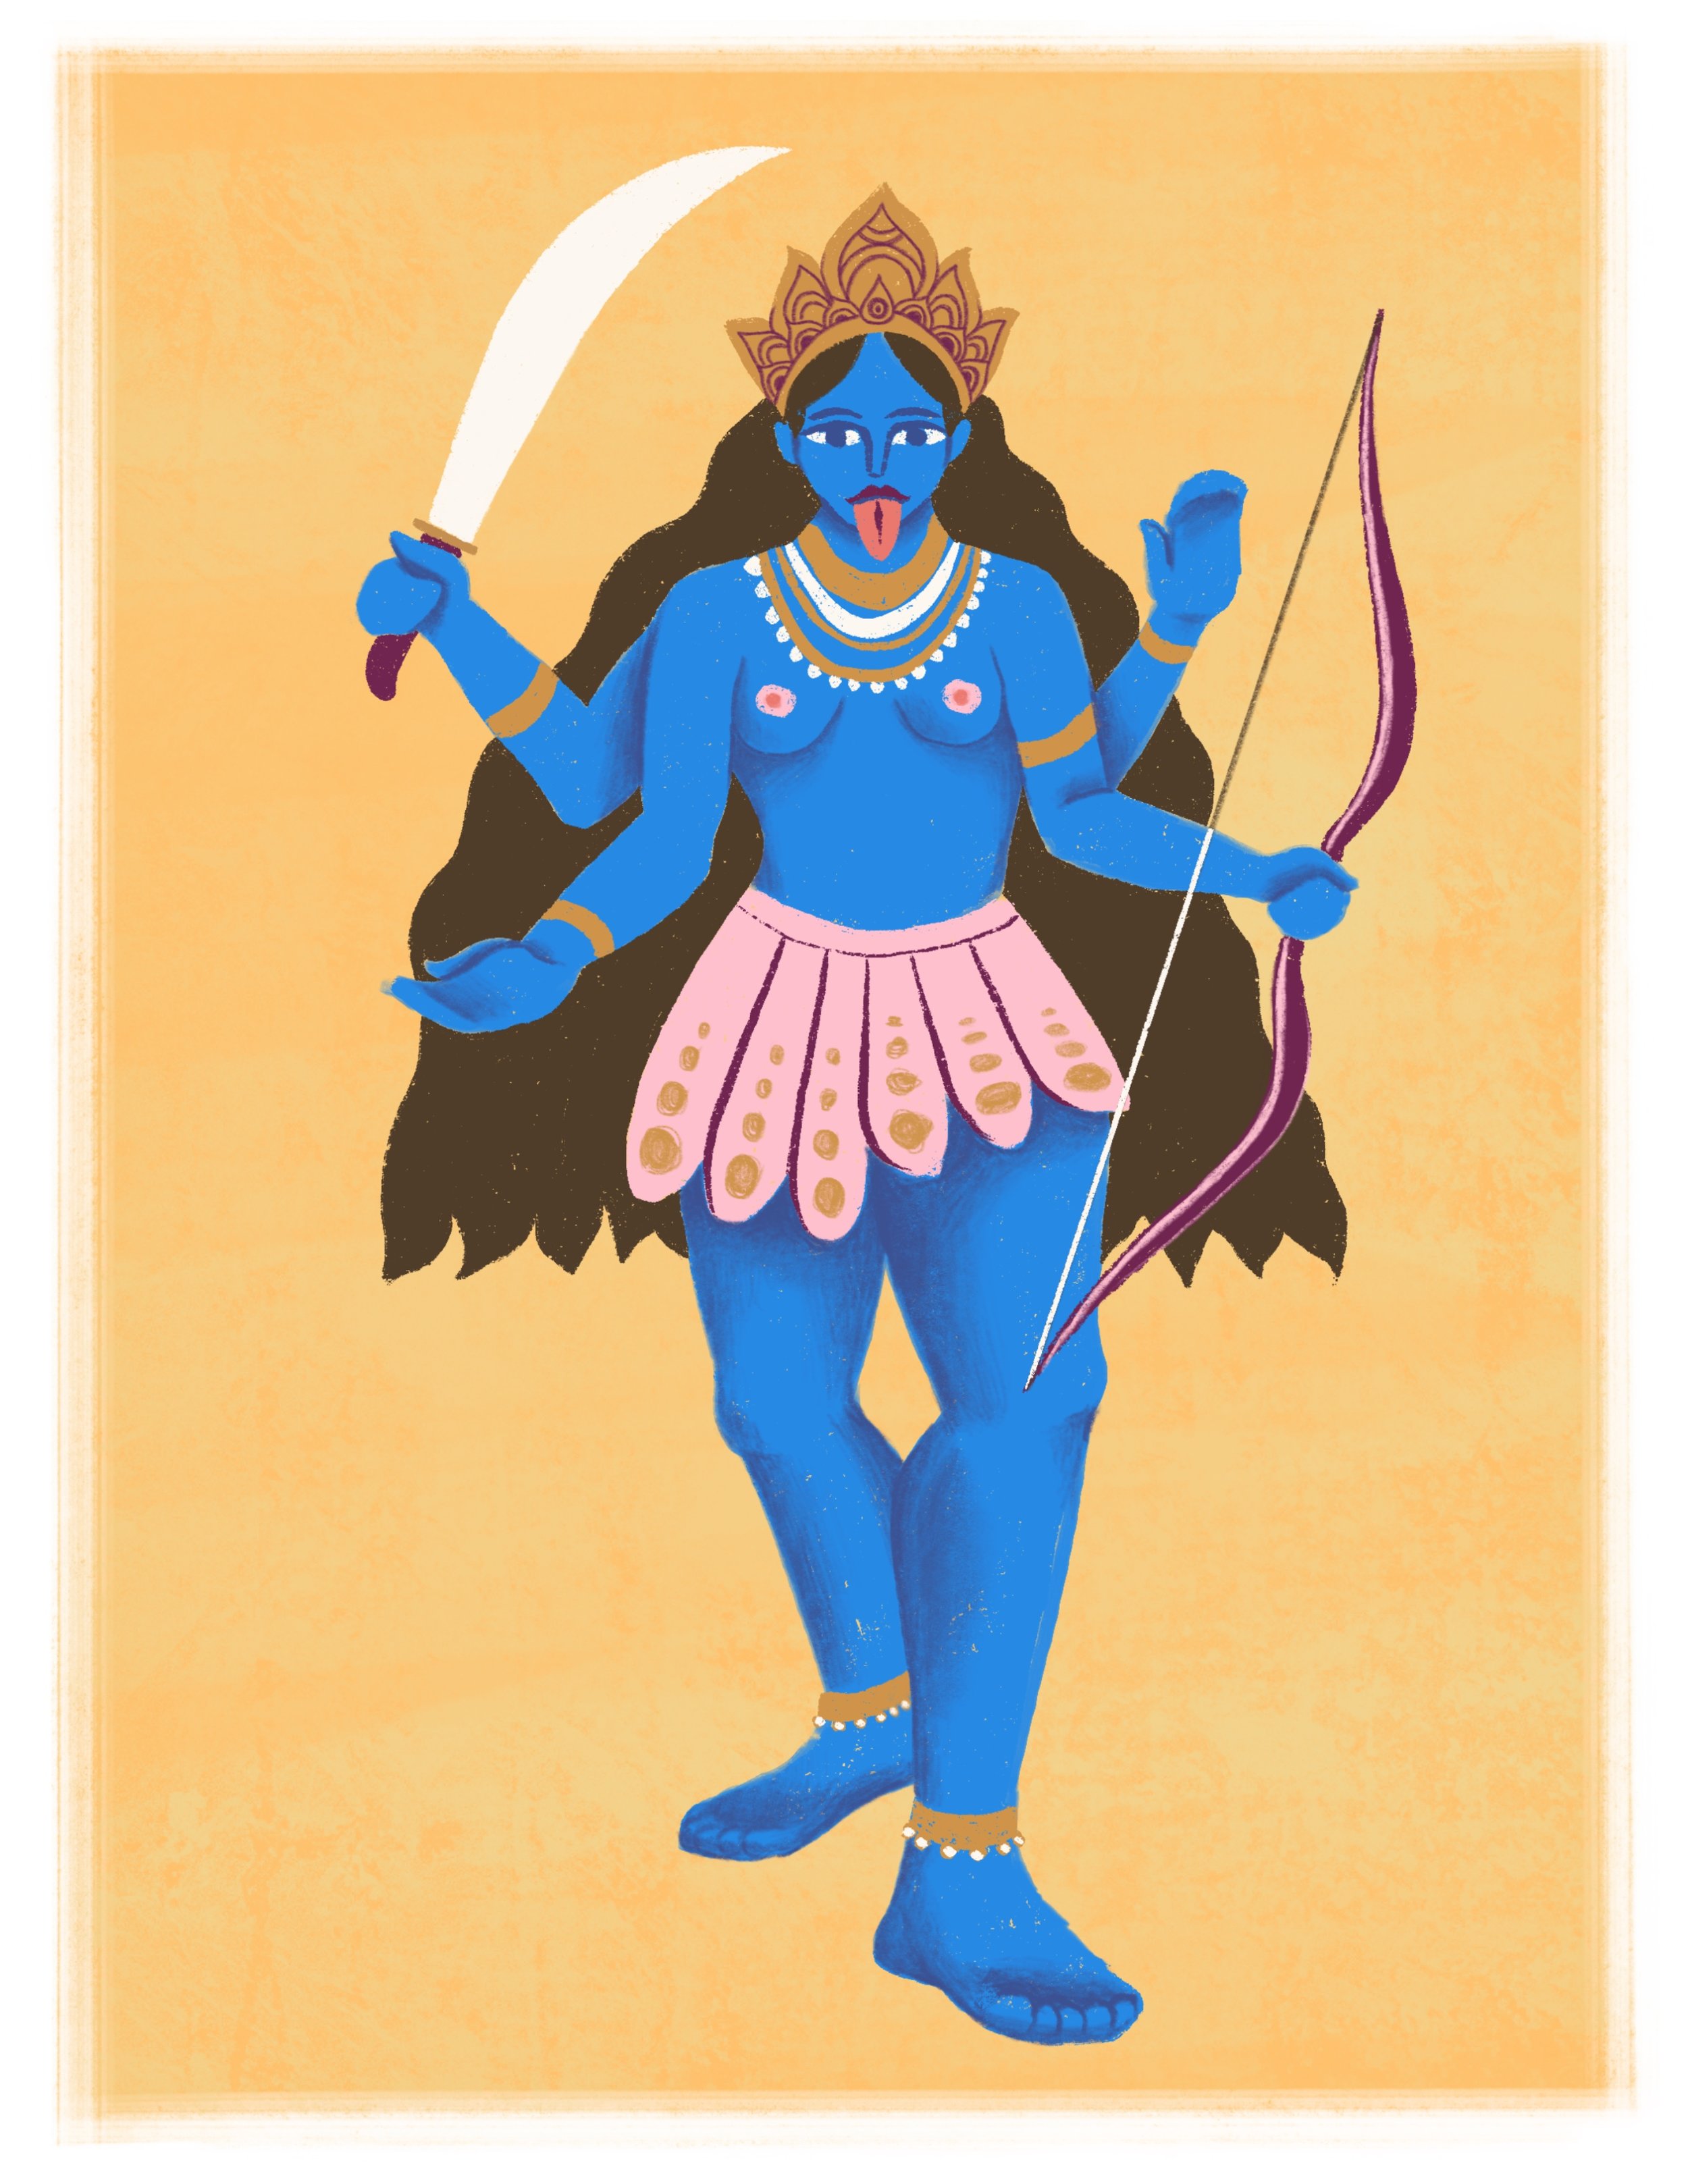 Goddess Kali.jpg